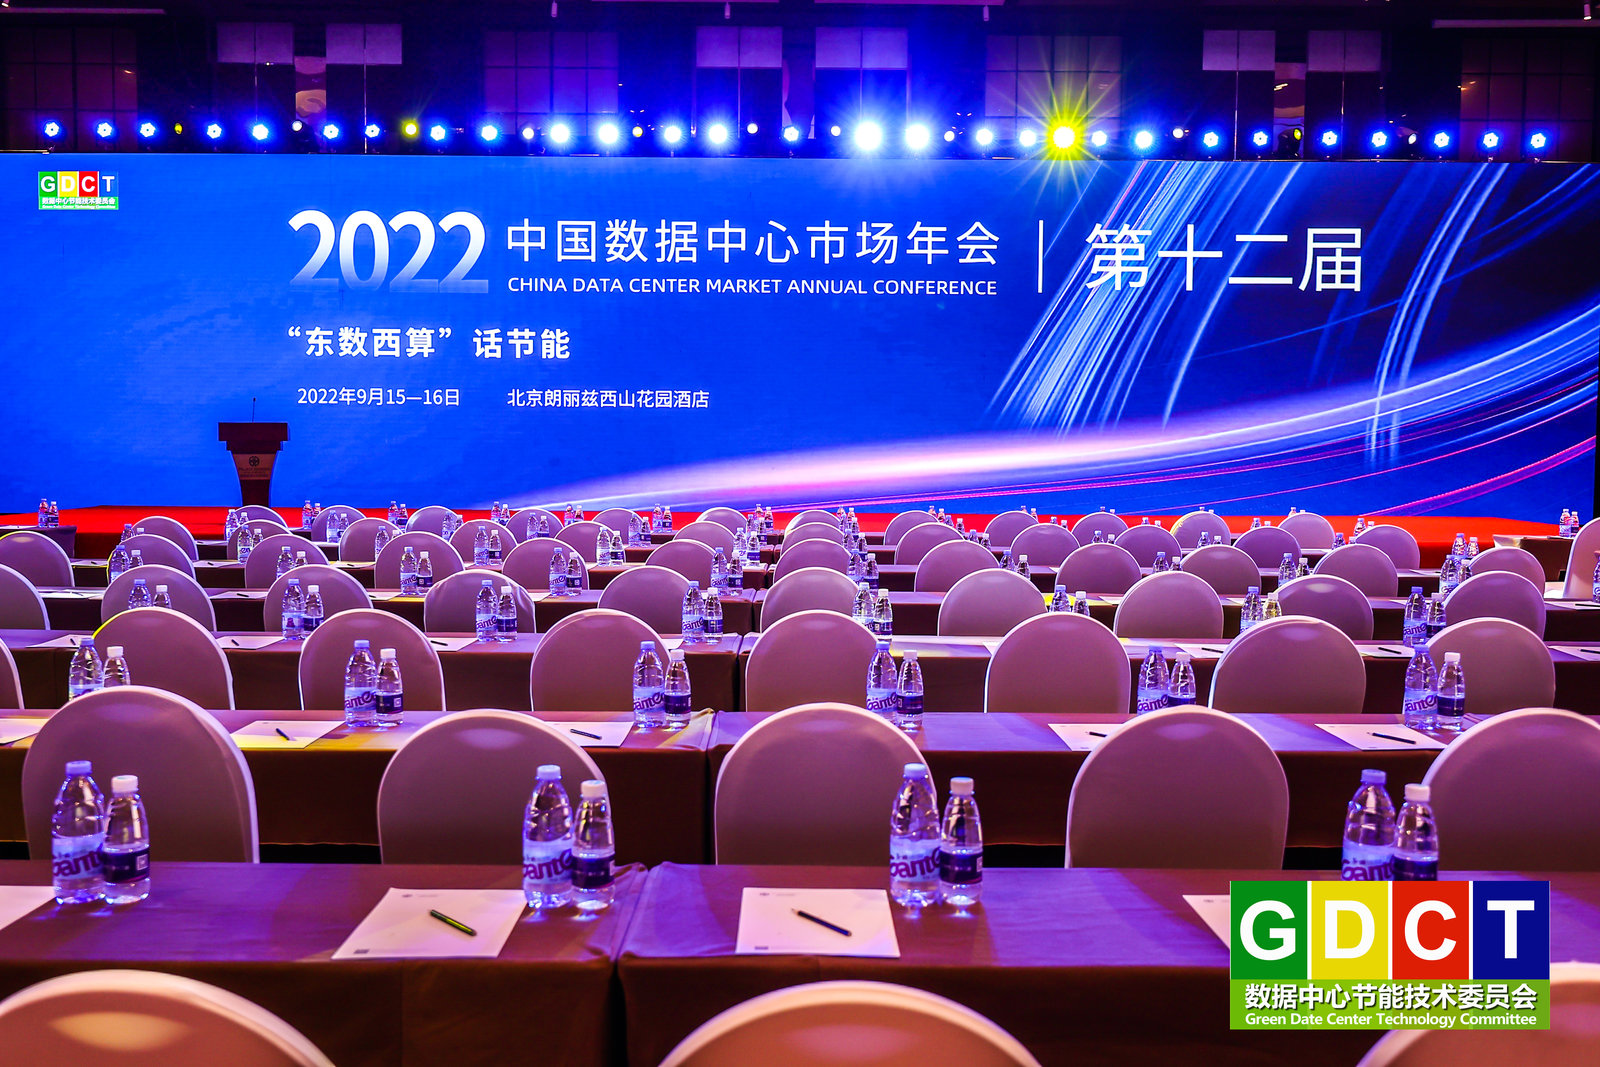 聚焦节能增效，共话绿色降碳，艾特网能受邀出席2022中国数据中心市场年会